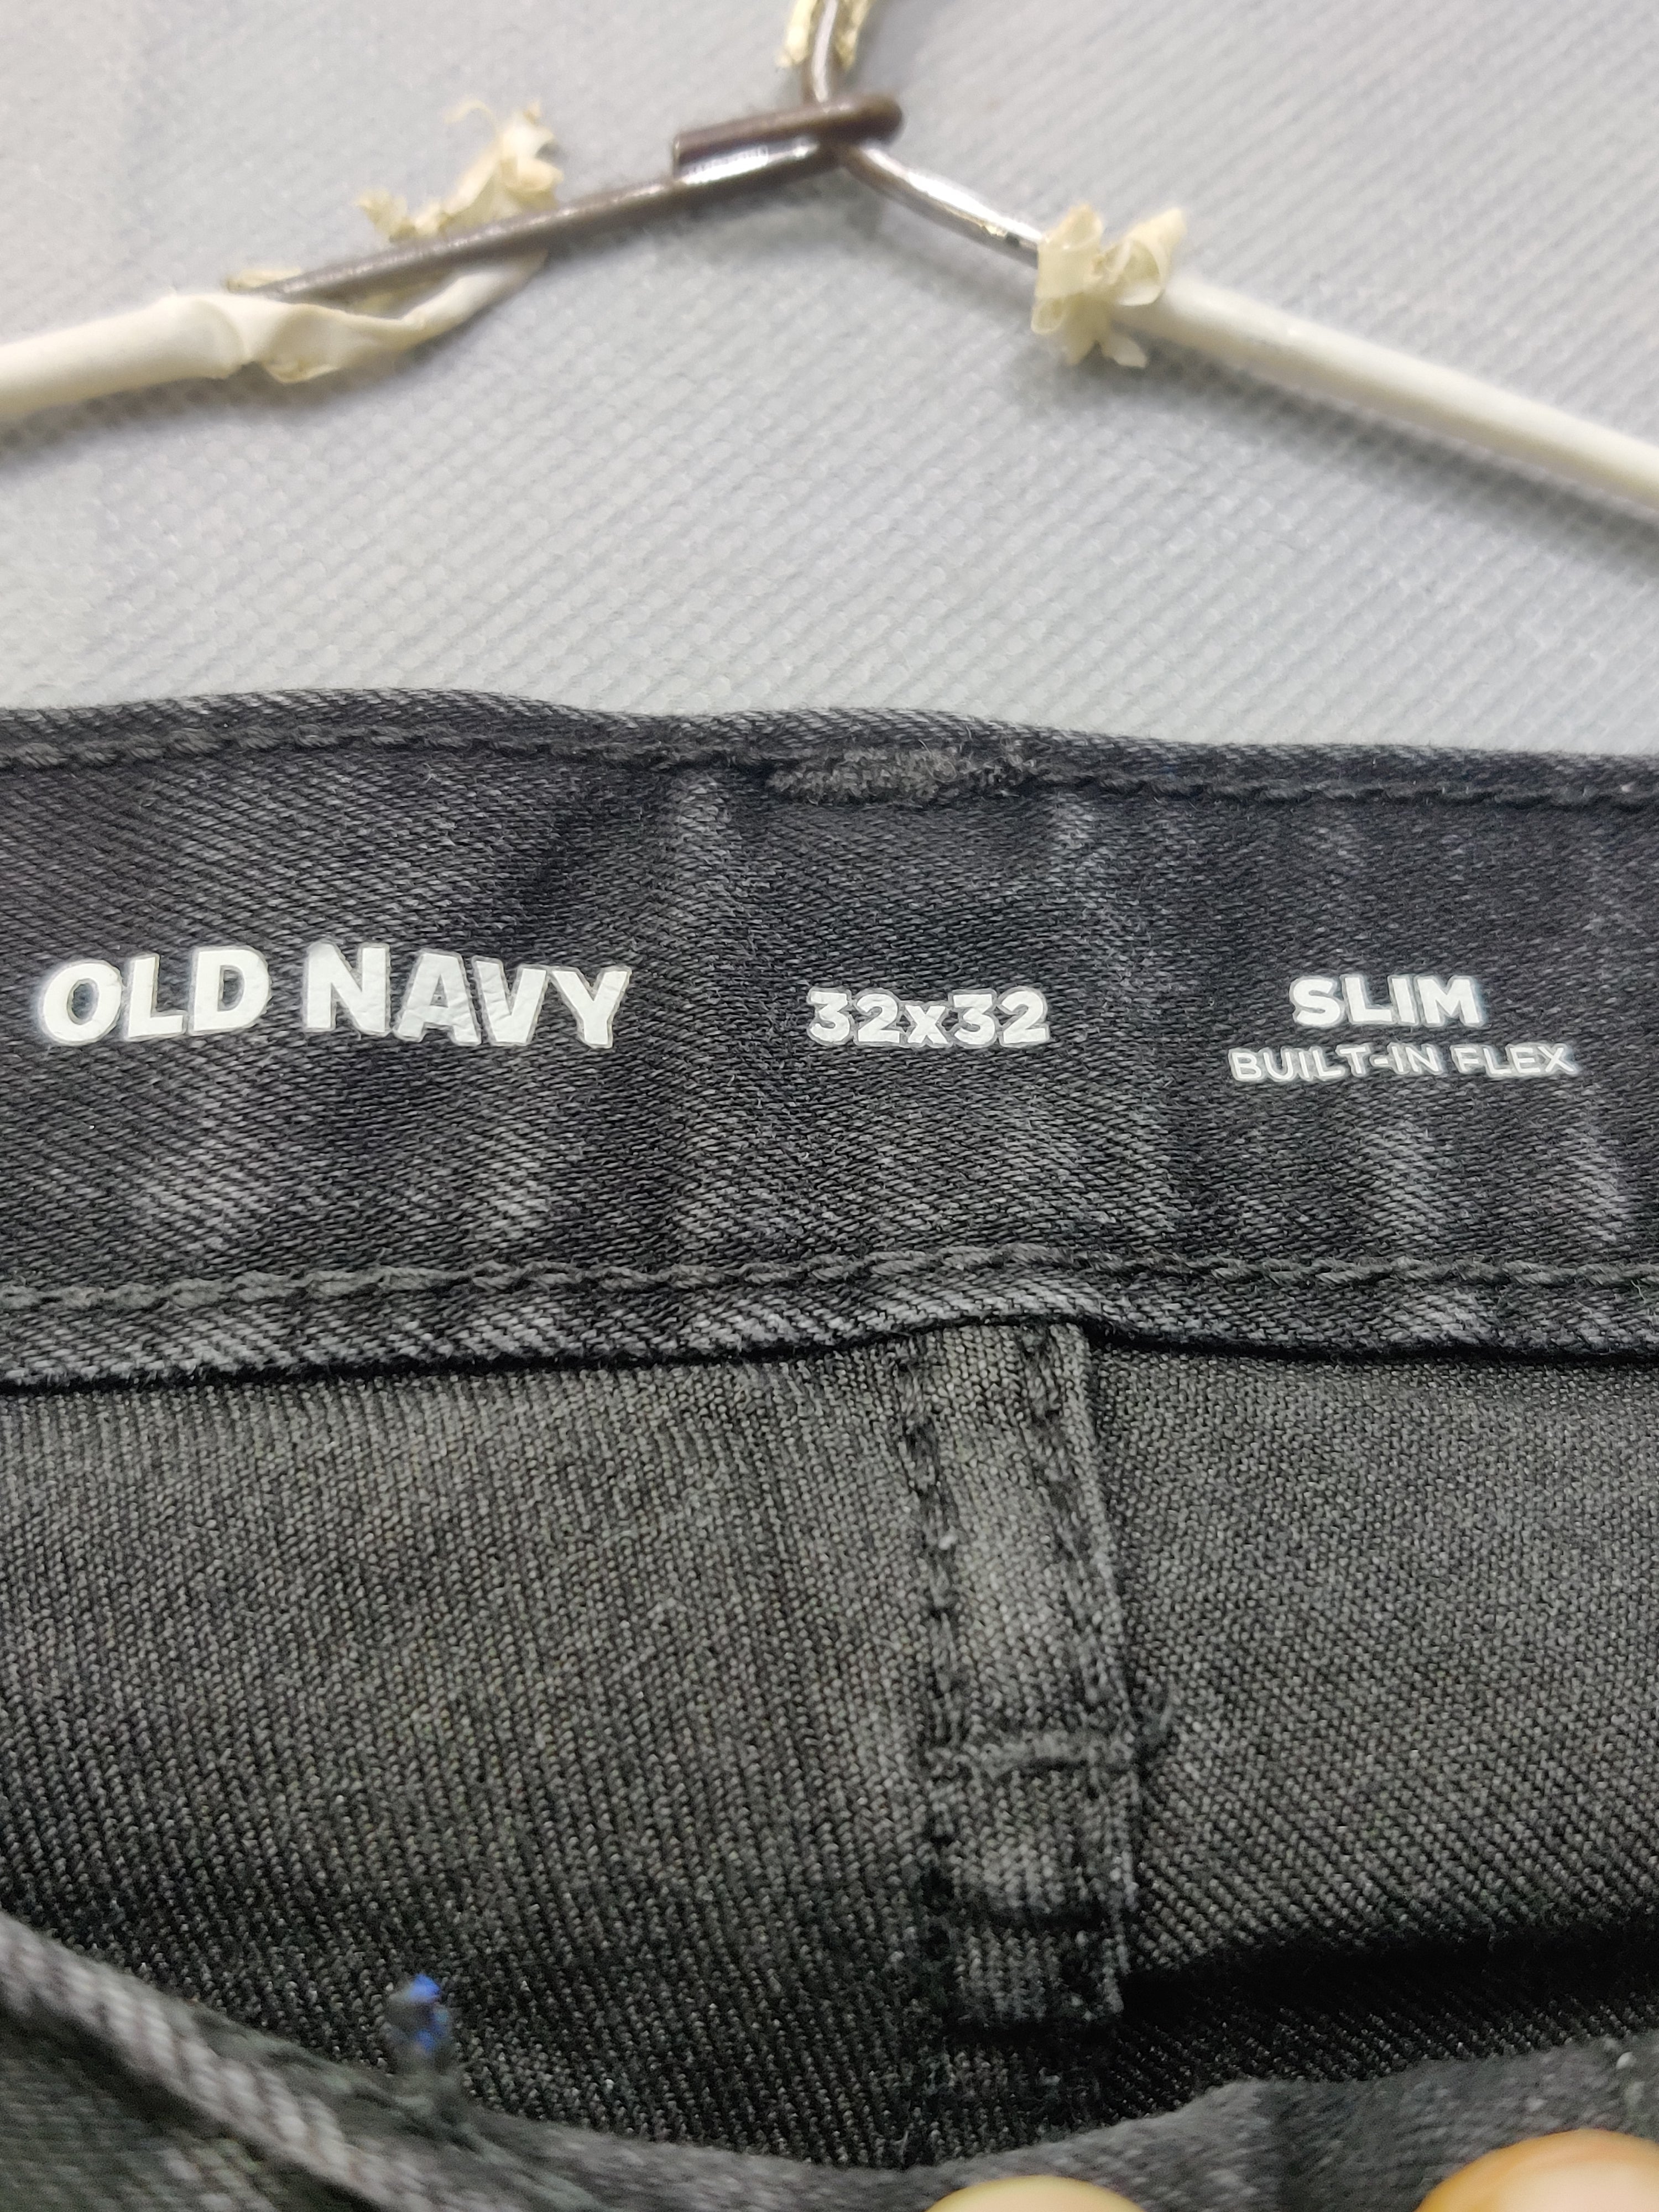 Old Navy Branded Original Denim Jeans For Men